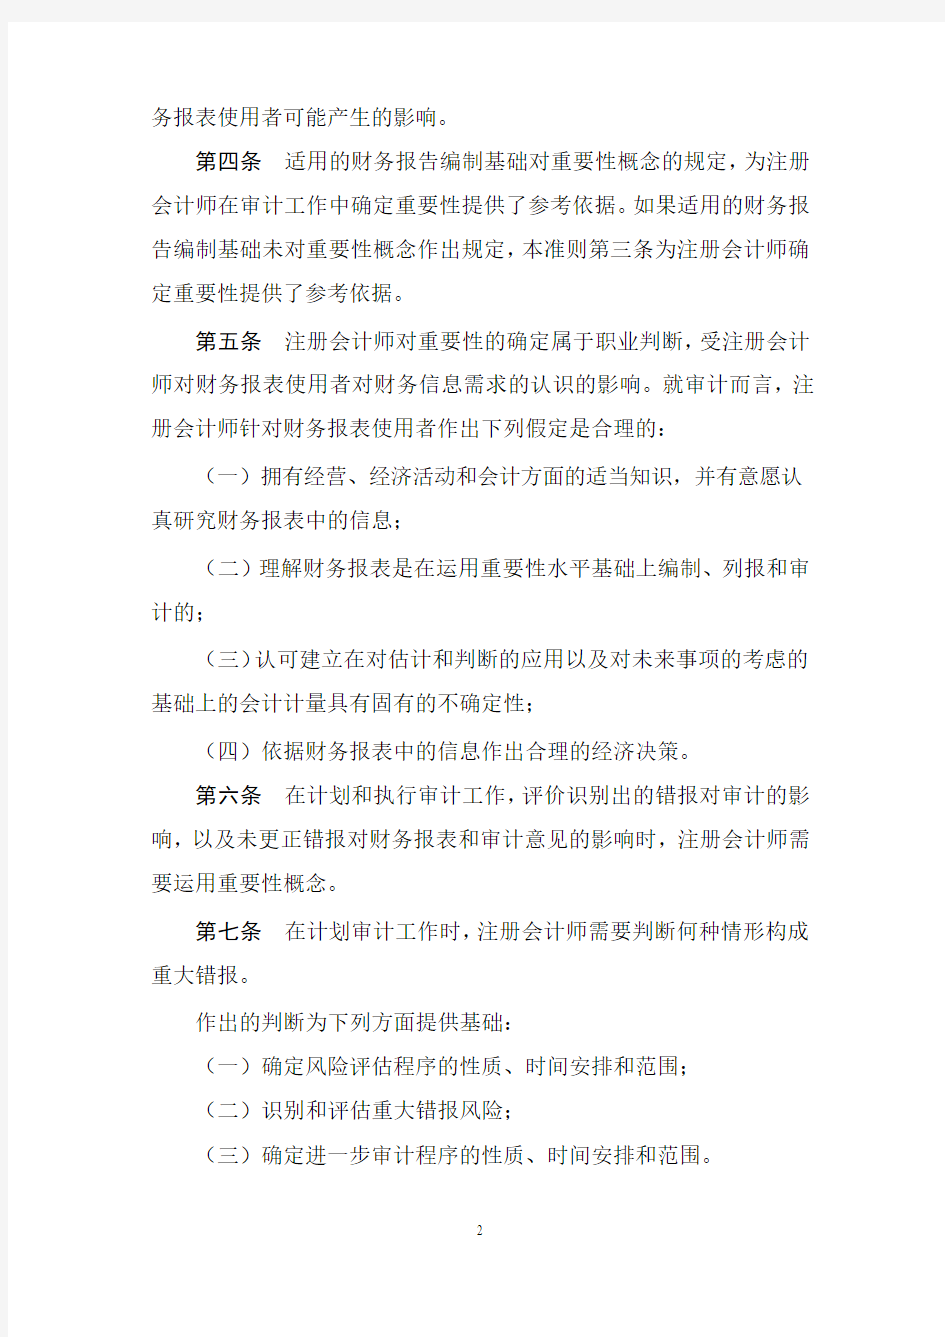 中国注册会计师审计准则第1221号(尚未生效)(2019发布)——计划和执行审计工作时的重要性